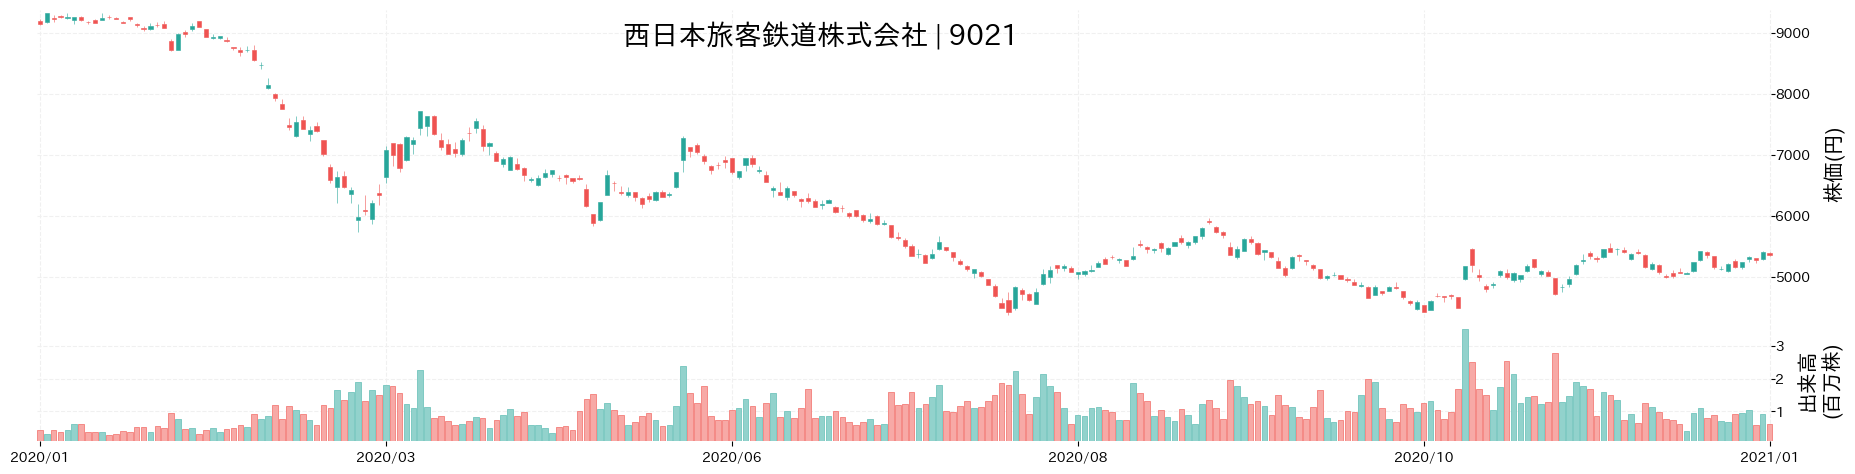 西日本旅客鉄道の株価推移(2020)